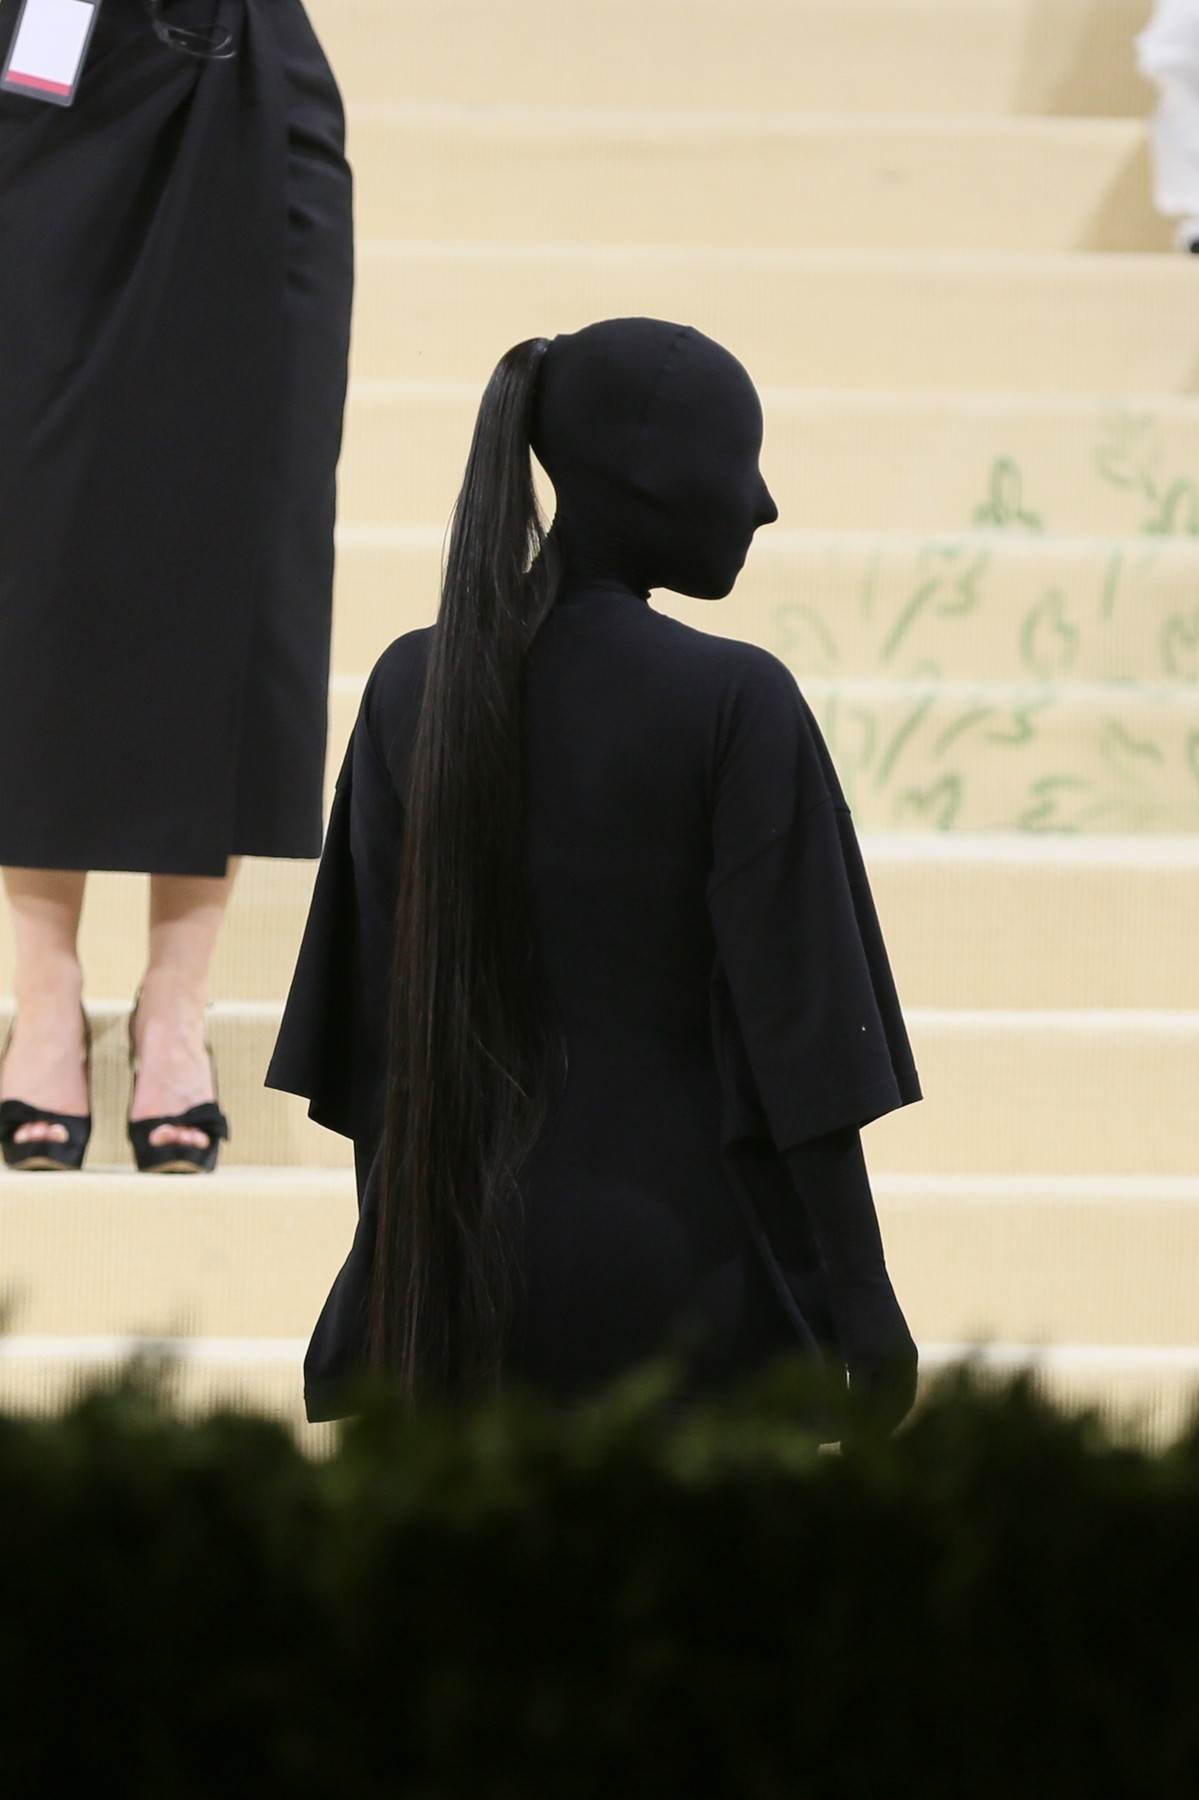  Kim Kardašijan nosi pelene da ne bi išla u wc - Profimedia 